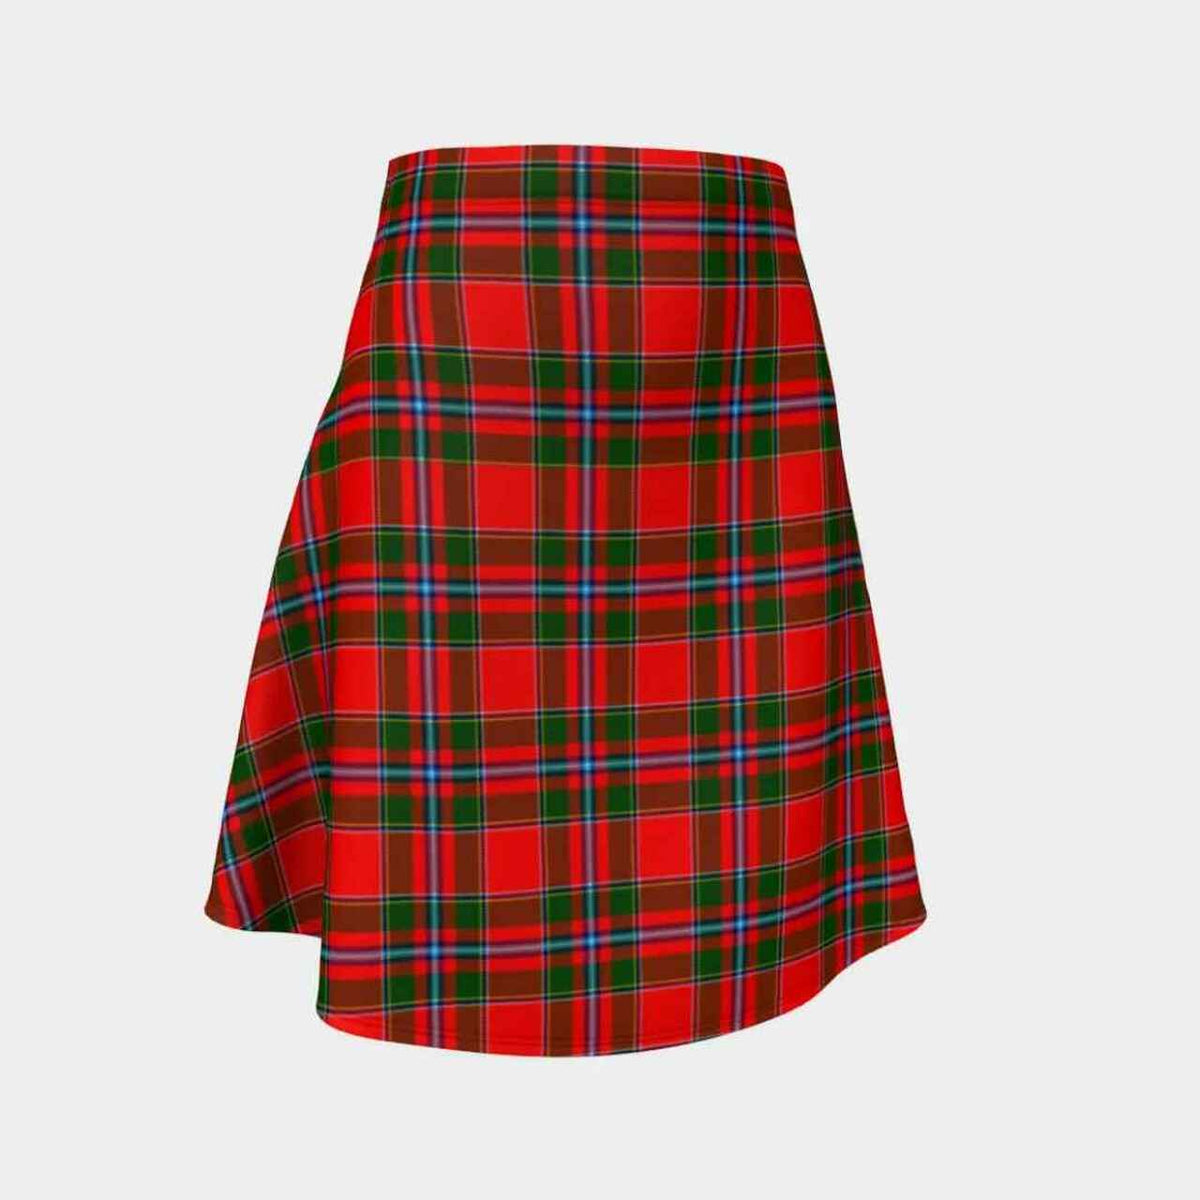 Perthshire District Tartan Flared Skirt